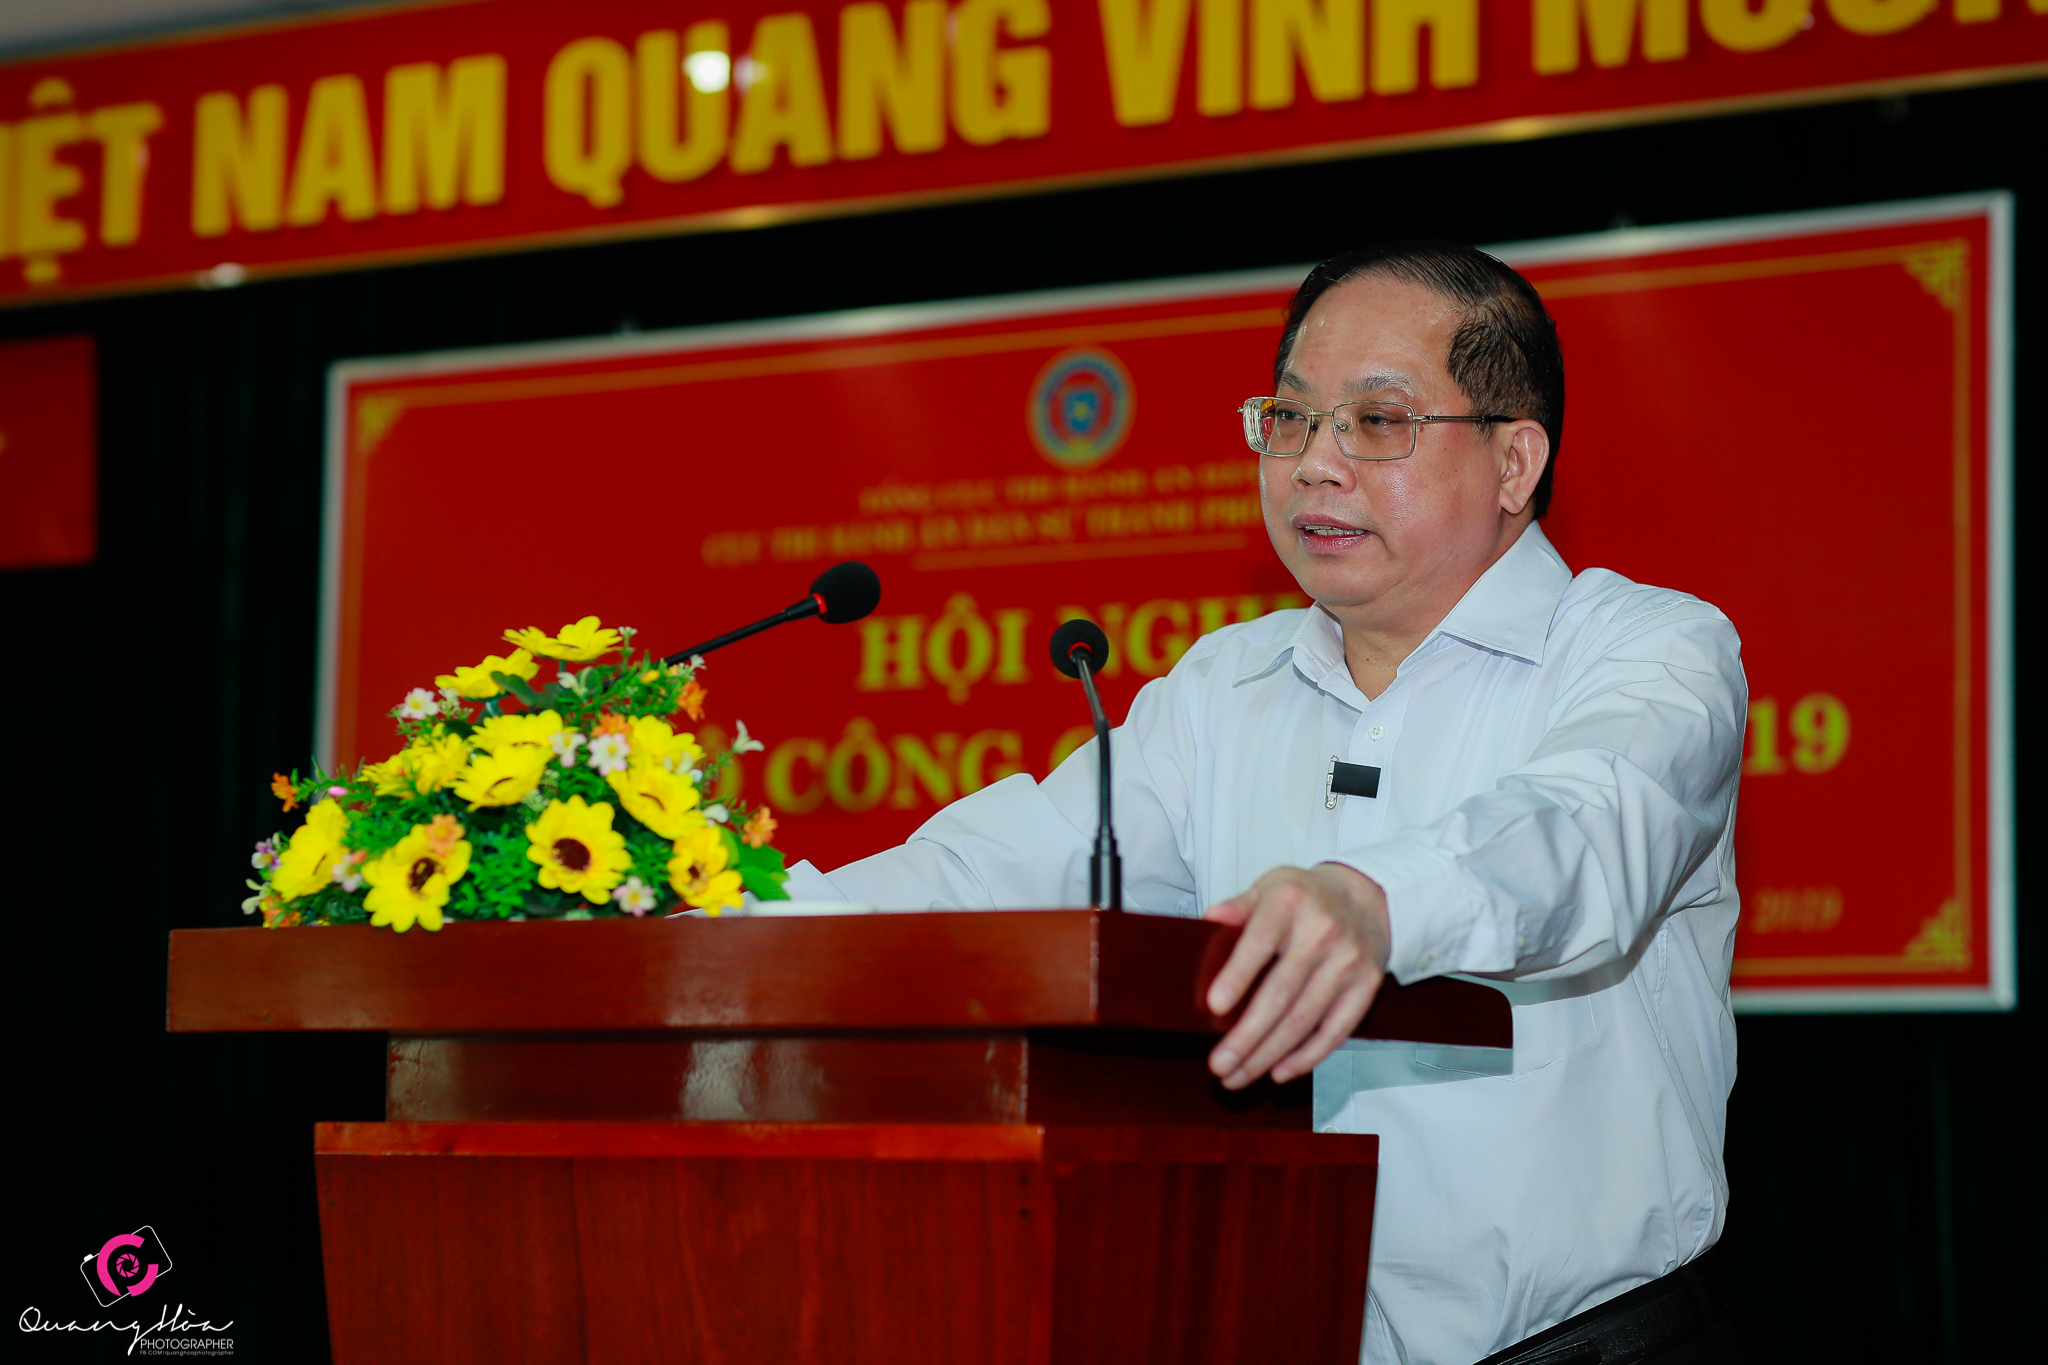 Cục Thi hành án dân sự thành phố Hồ Chí Minh tổ chức Hội nghị cán bộ công chức năm 2019